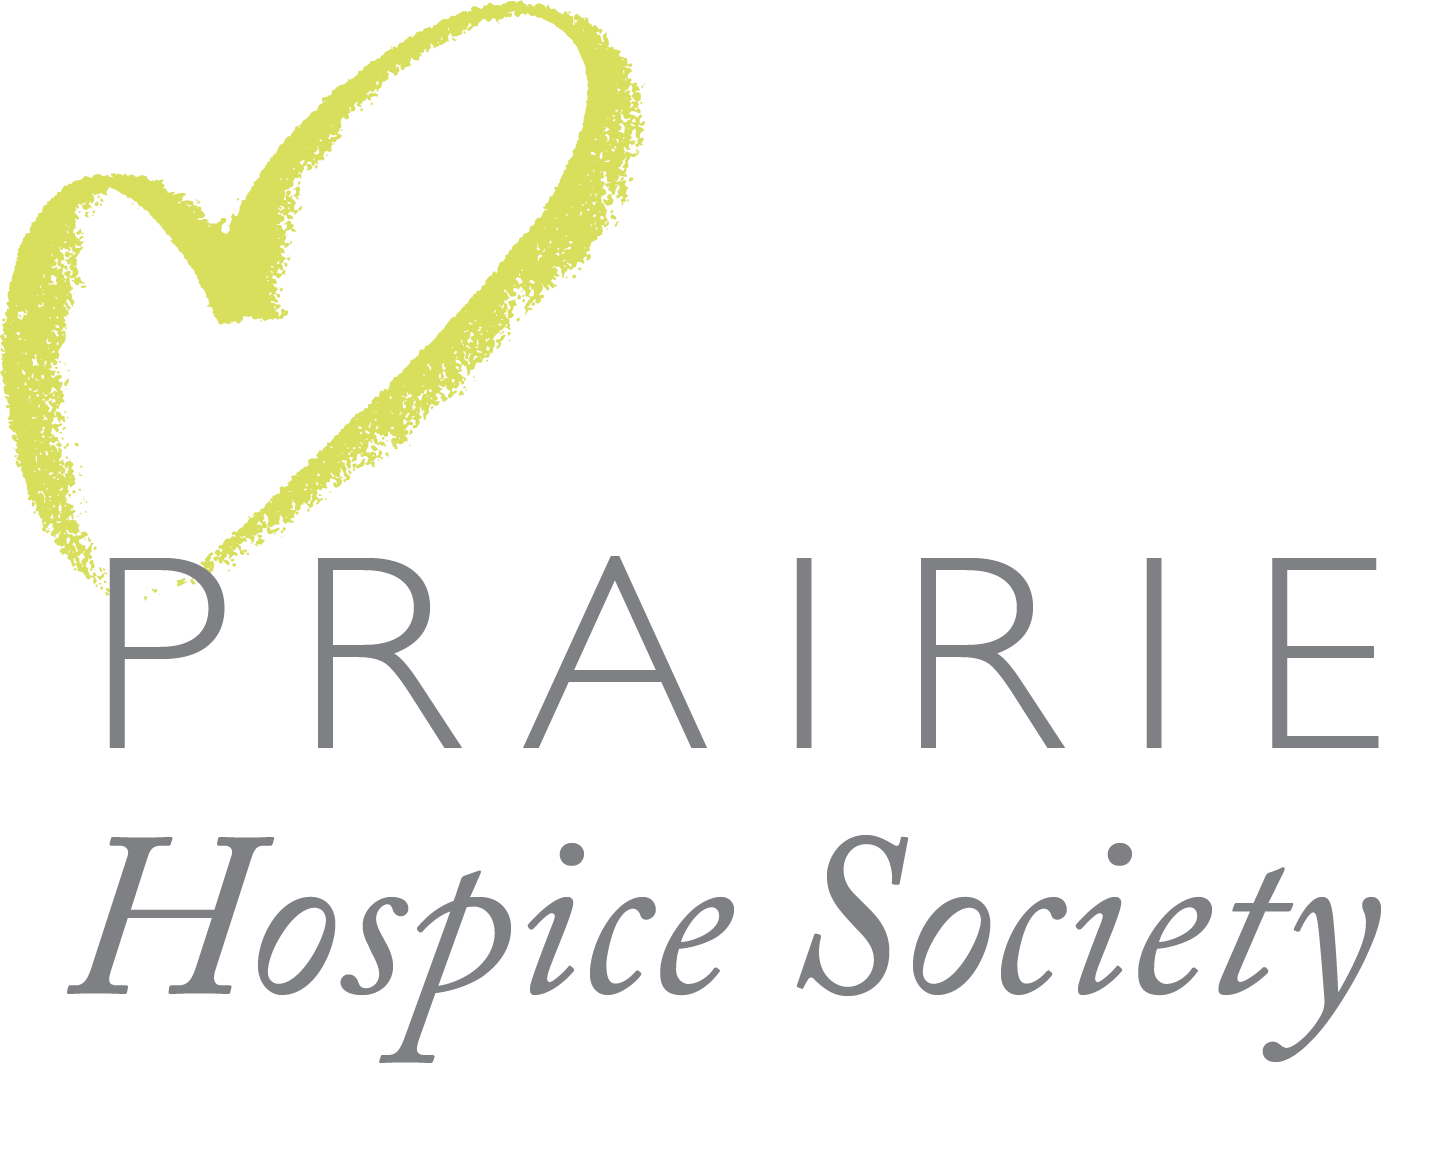 Prairie Hospice Society logo